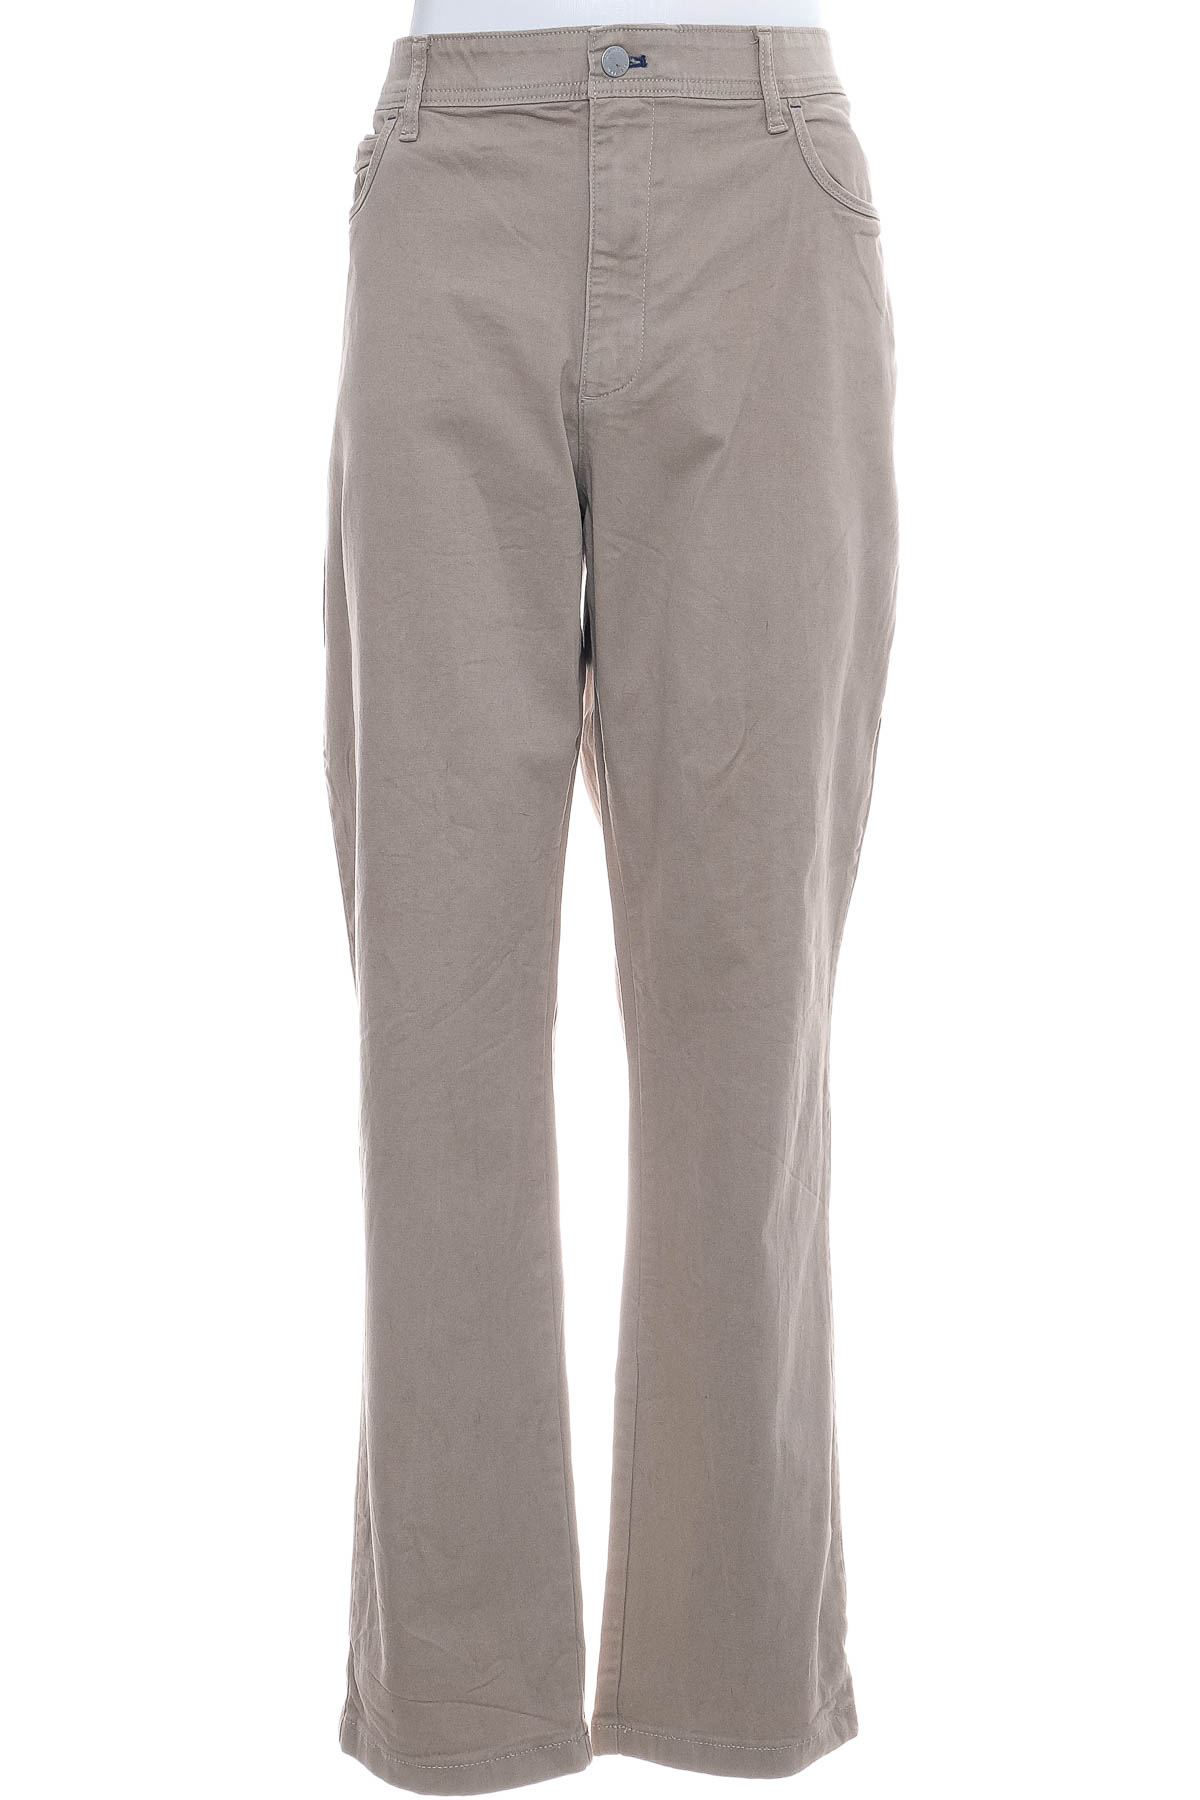 Pantalon pentru bărbați - Calvin Klein - 0